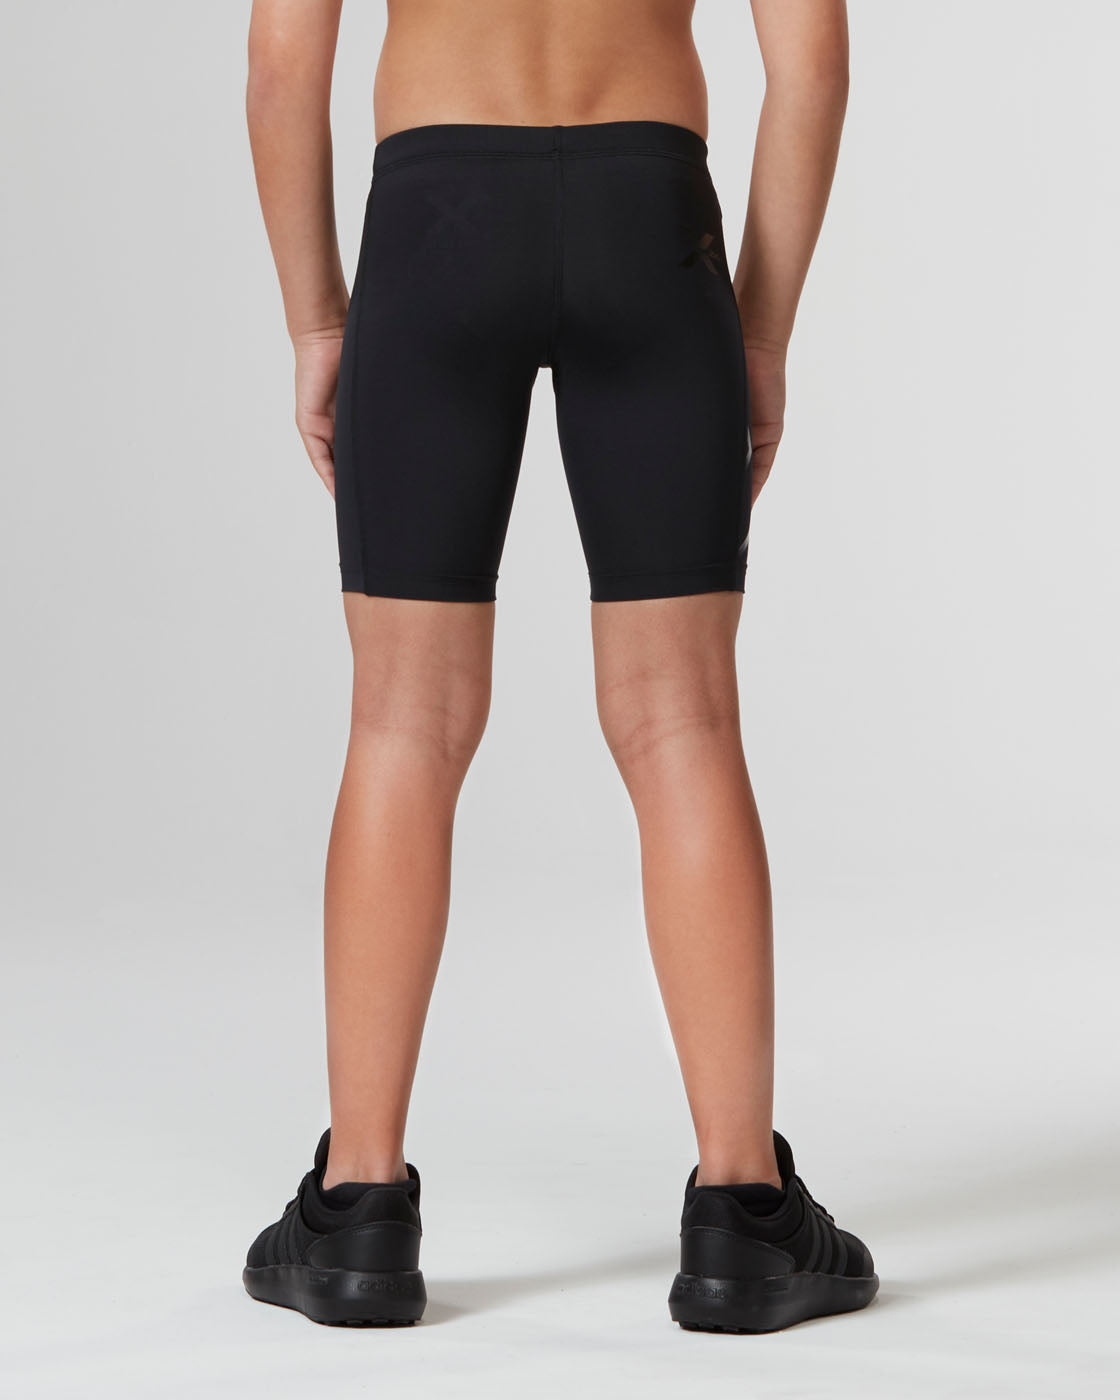 Core Boys Compression Shorts, Black/Nero